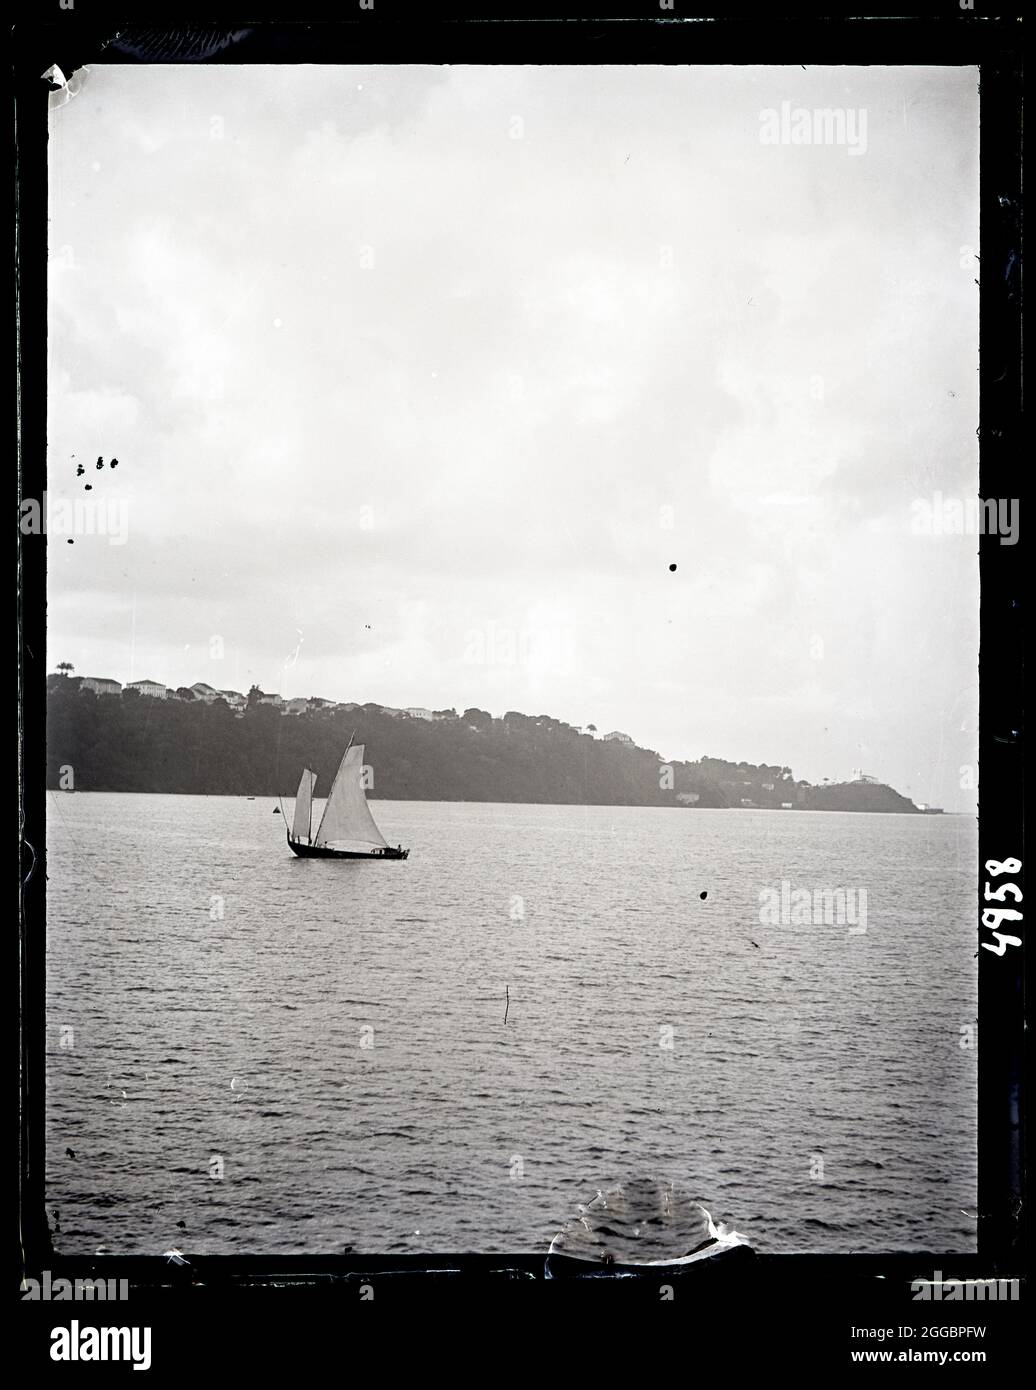 États-Unis Fish Commission Steamer « Albatross » Circumnavigation of South America, 1888. Vue sur la côte depuis un bateau avec des pêcheurs locaux sur un voilier, le détroit de Magellan. Banque D'Images